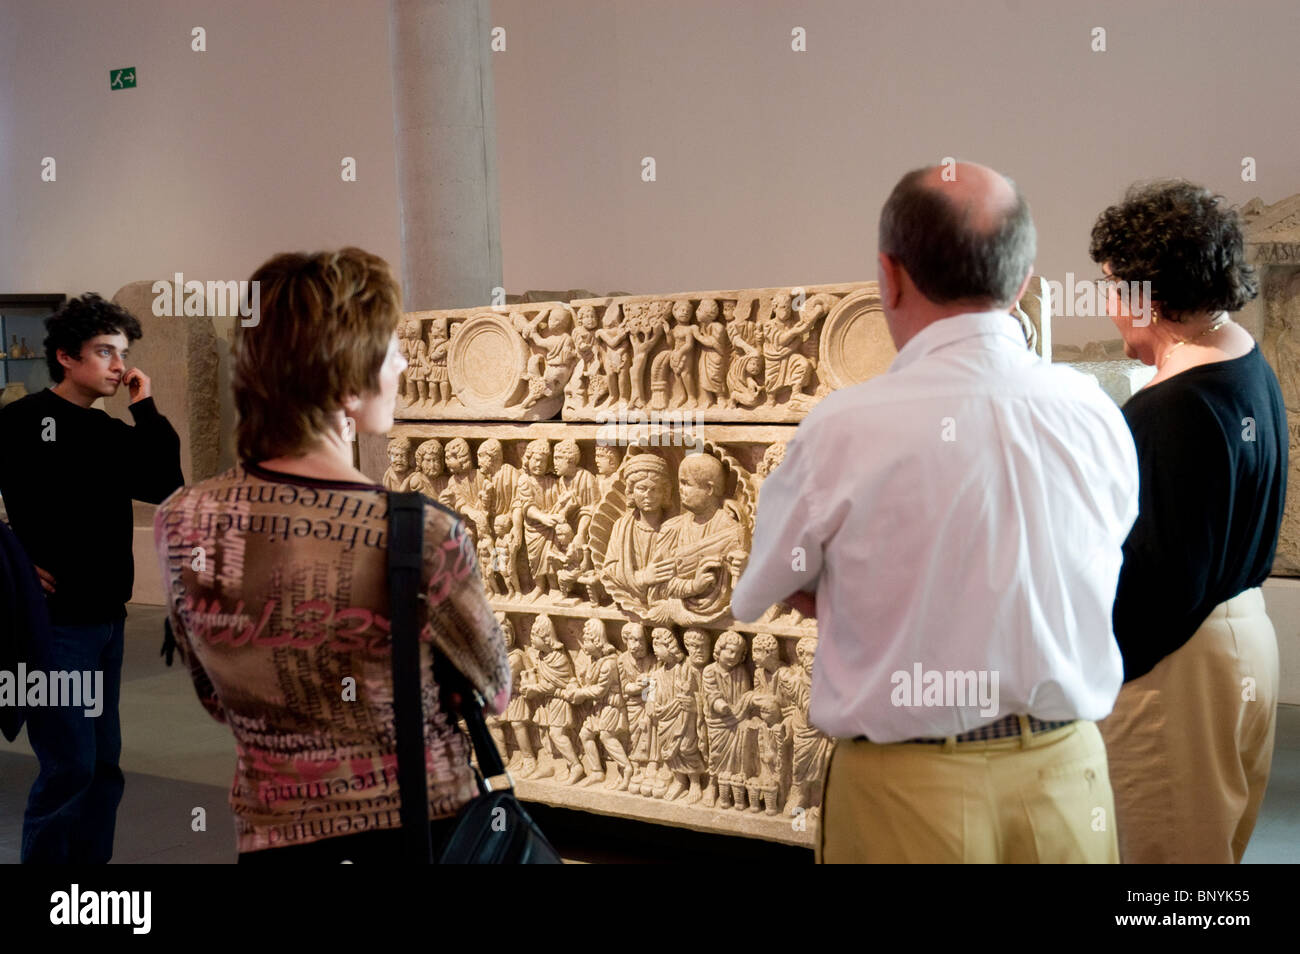 Touristes en groupe visitant le Musée archéologique d'Arles, Guide touristique expliquant les objets anciens exposés, coffret funéraire, vacances historiques, art de la civilisation antique Banque D'Images